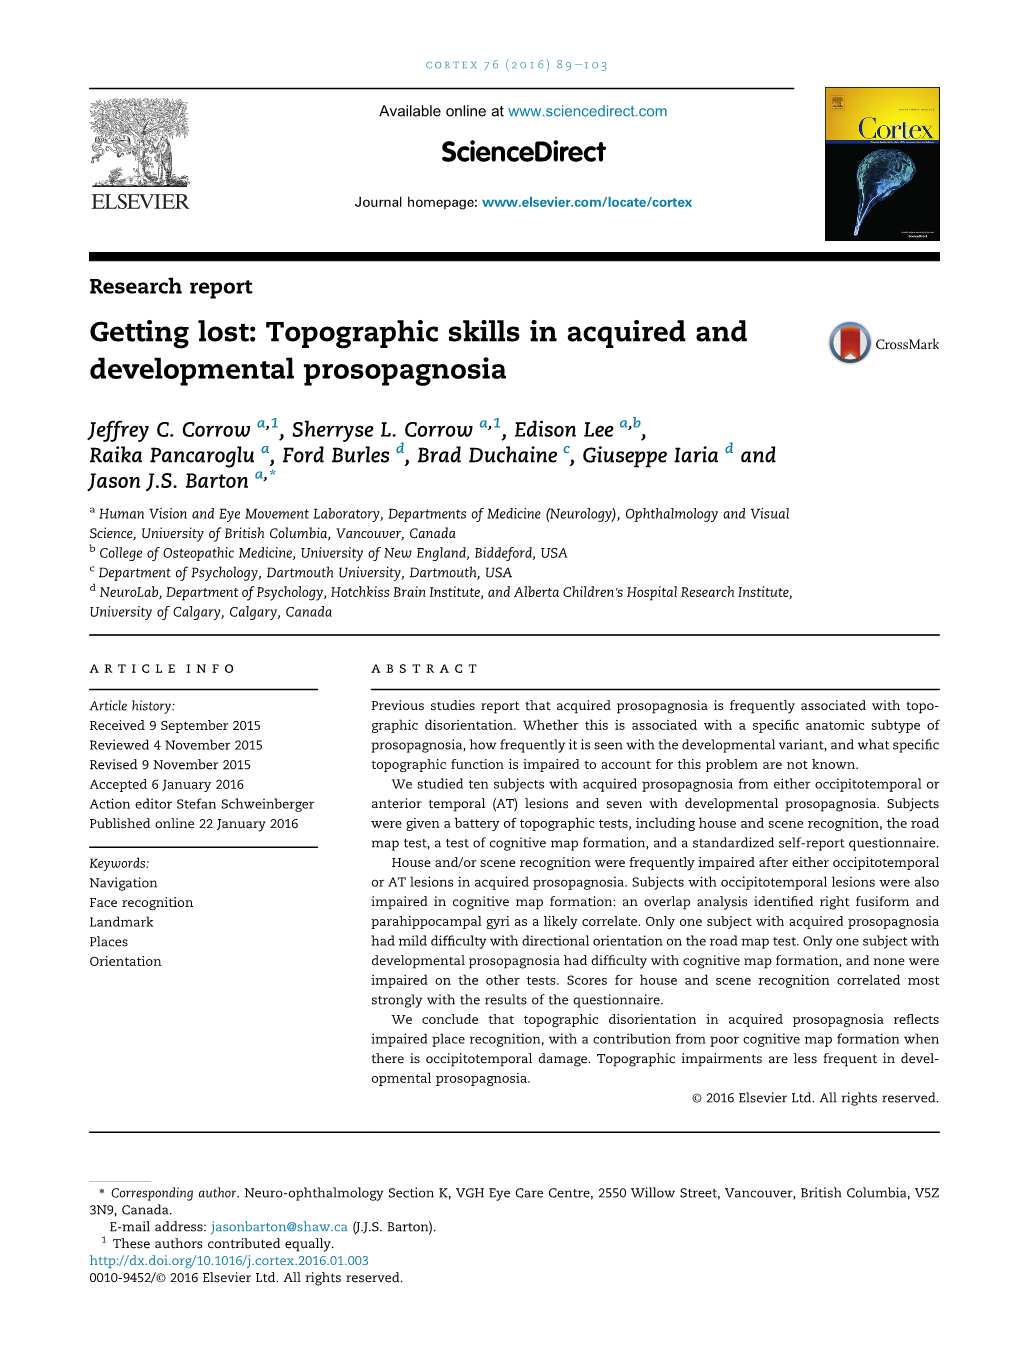 Topographic Skills in Acquired and Developmental Prosopagnosia